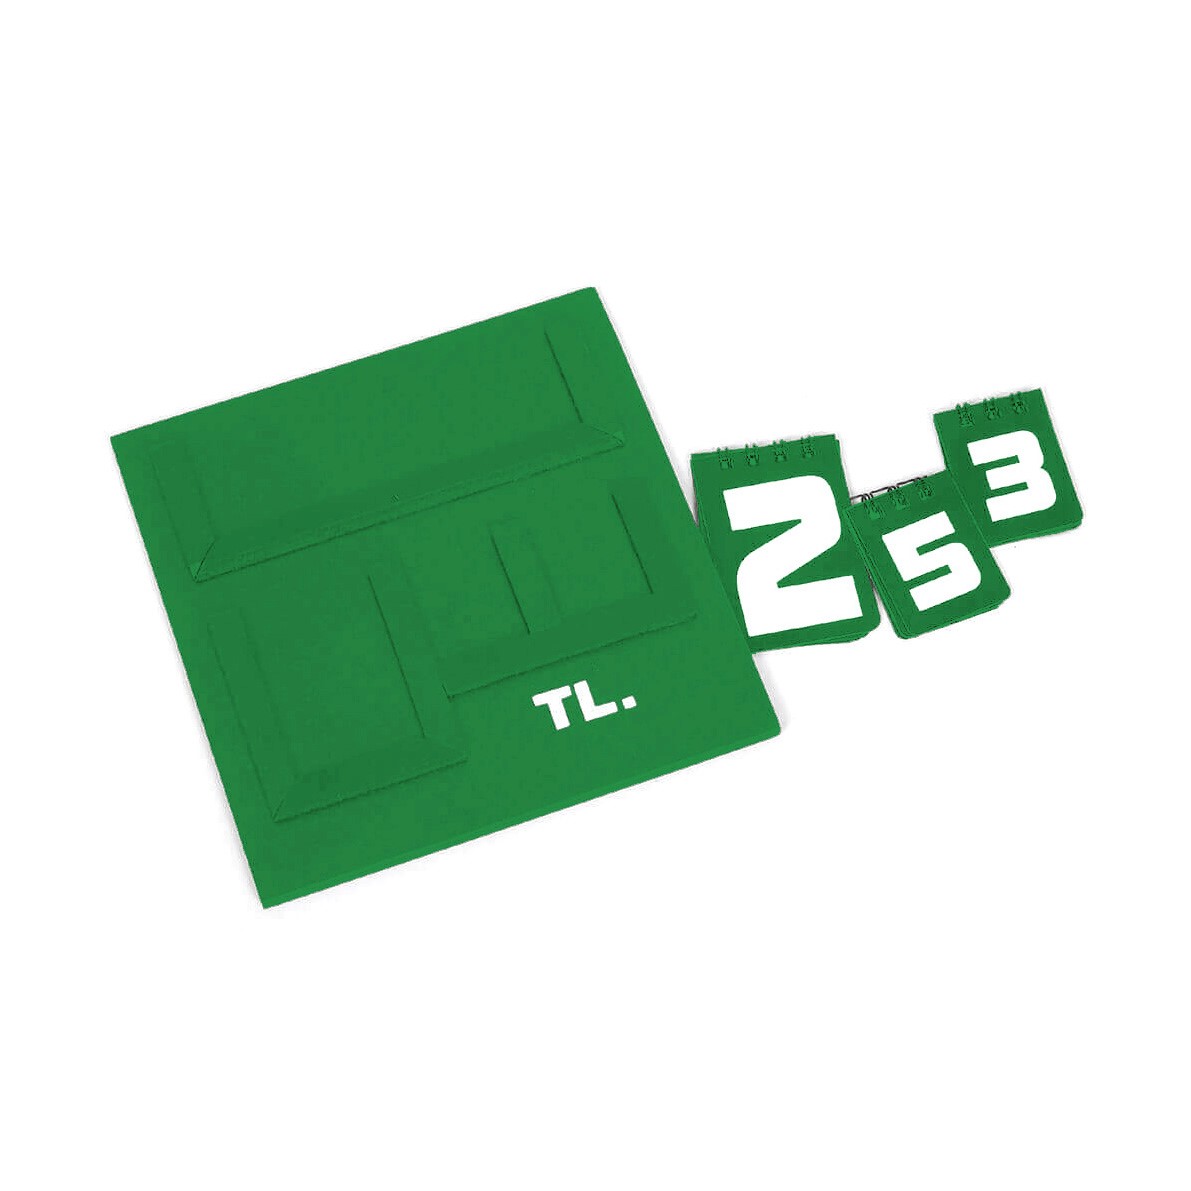 Yazılı Manav Etiketi Mini Çift Taraflı 16x16 cm Yeşil.jpg (75 KB)